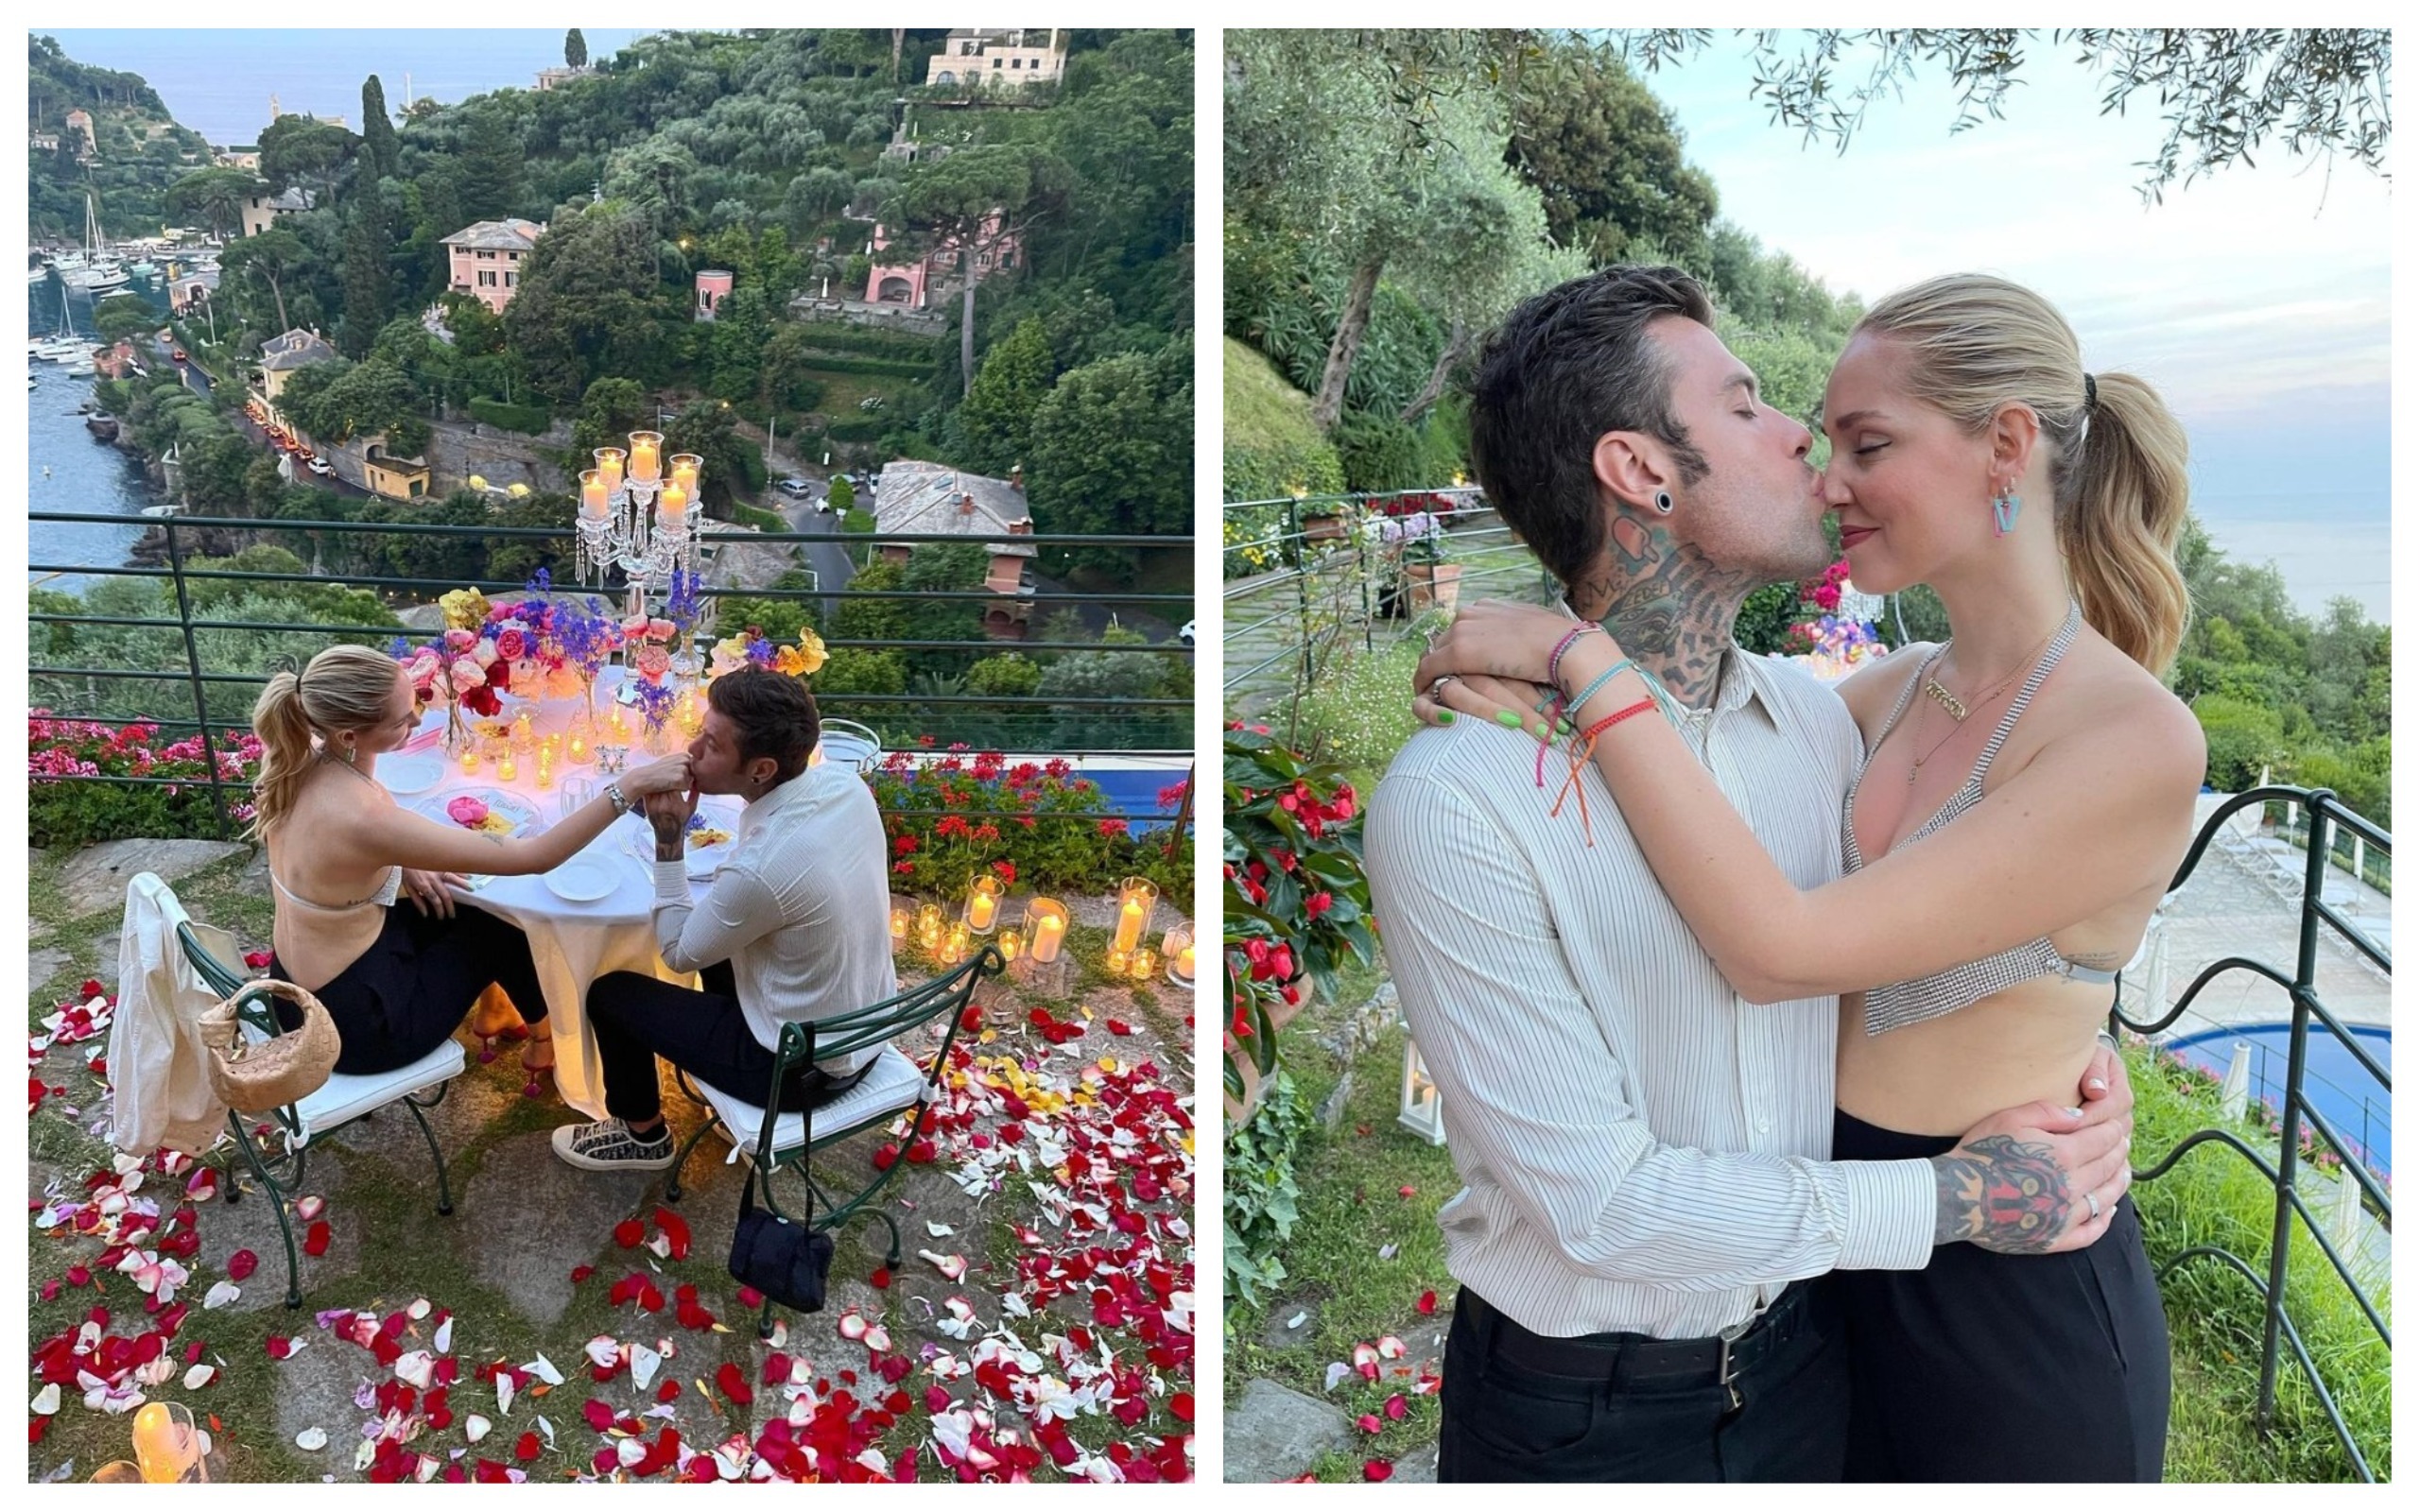 Chiara Ferragni e Fedez a Portofino, cena romantica con vista mozzafiato